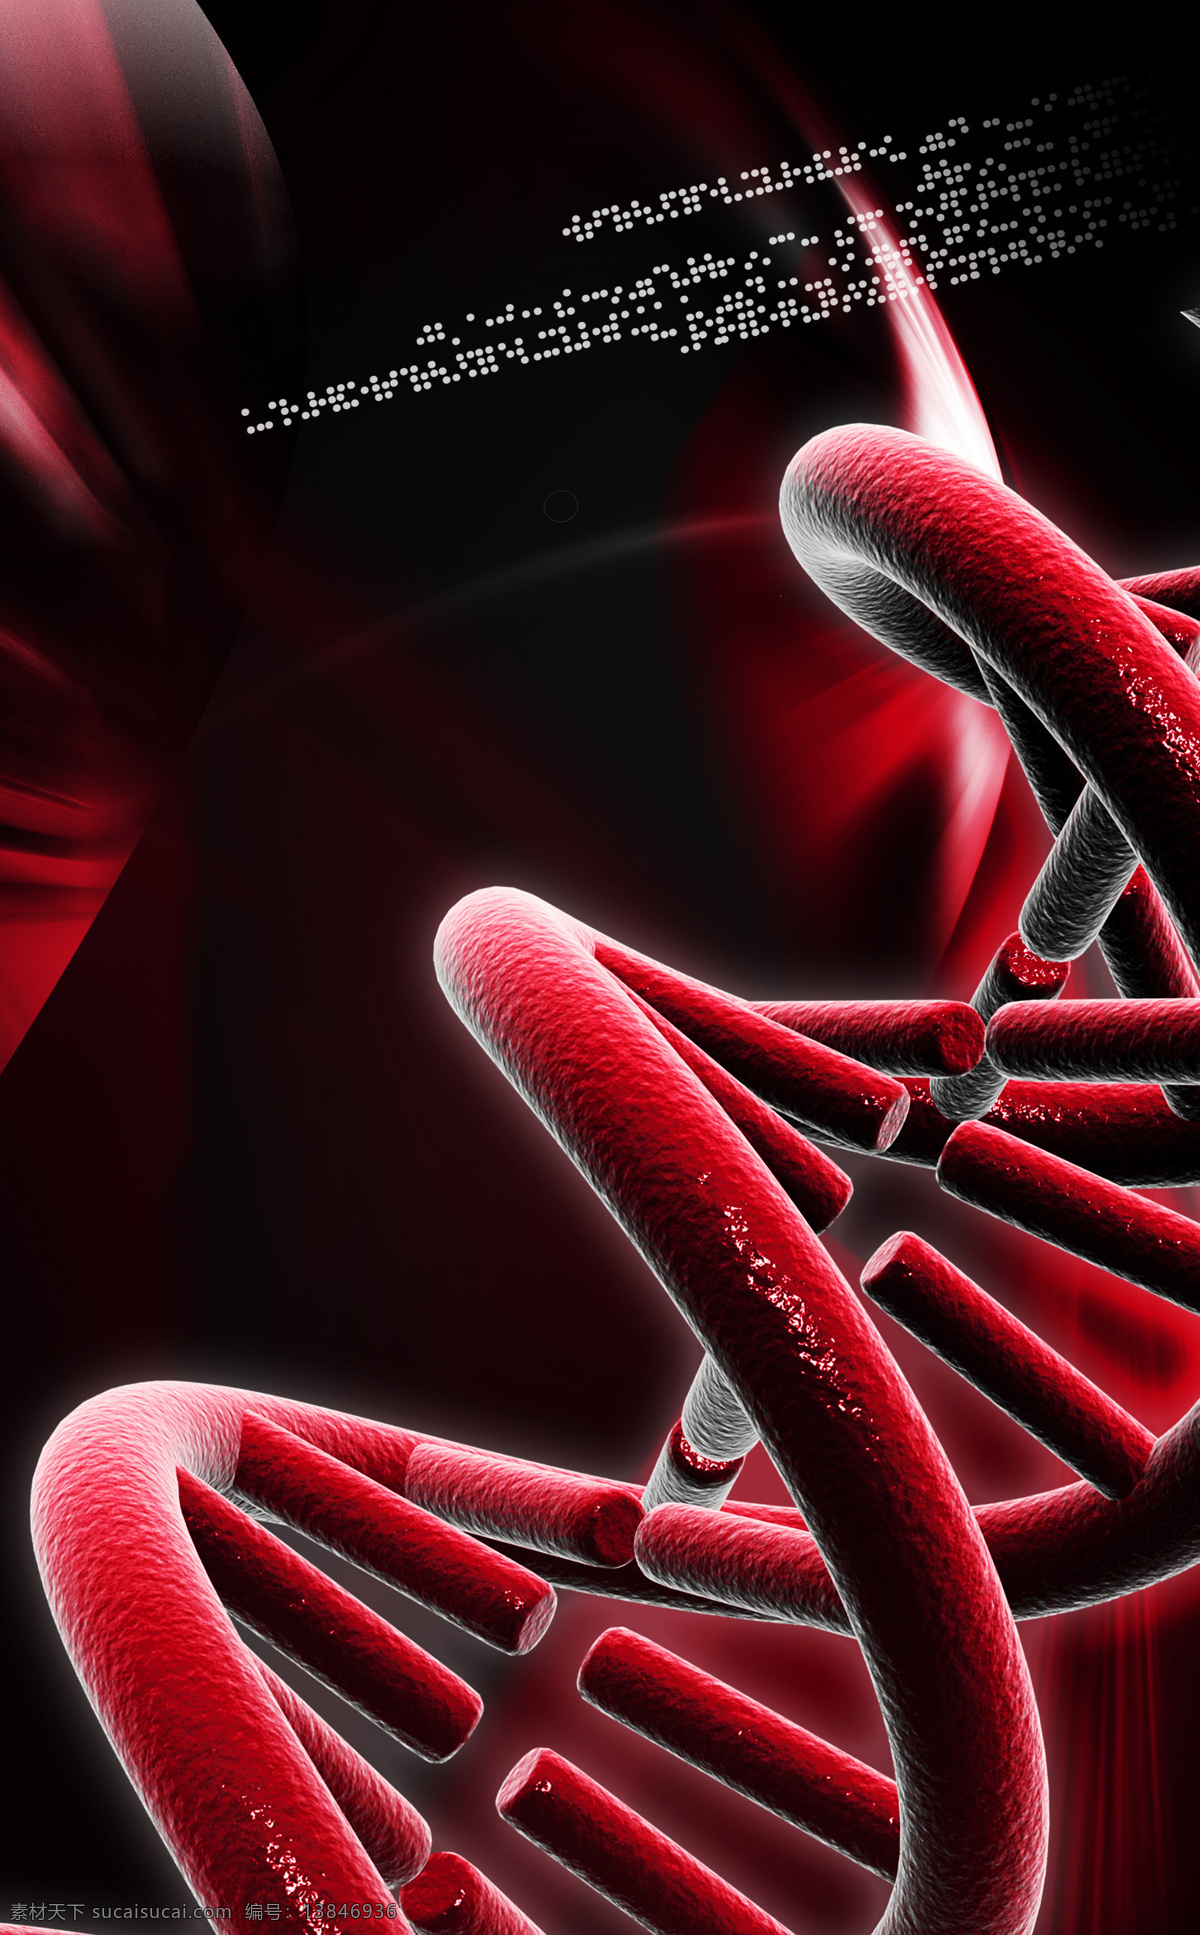 基因dna 分子 双链结构 高分子聚合物 脱氧核糖核酸 遗传 医疗 医学 染色体 科学实验 结构 现代科技 科学研究